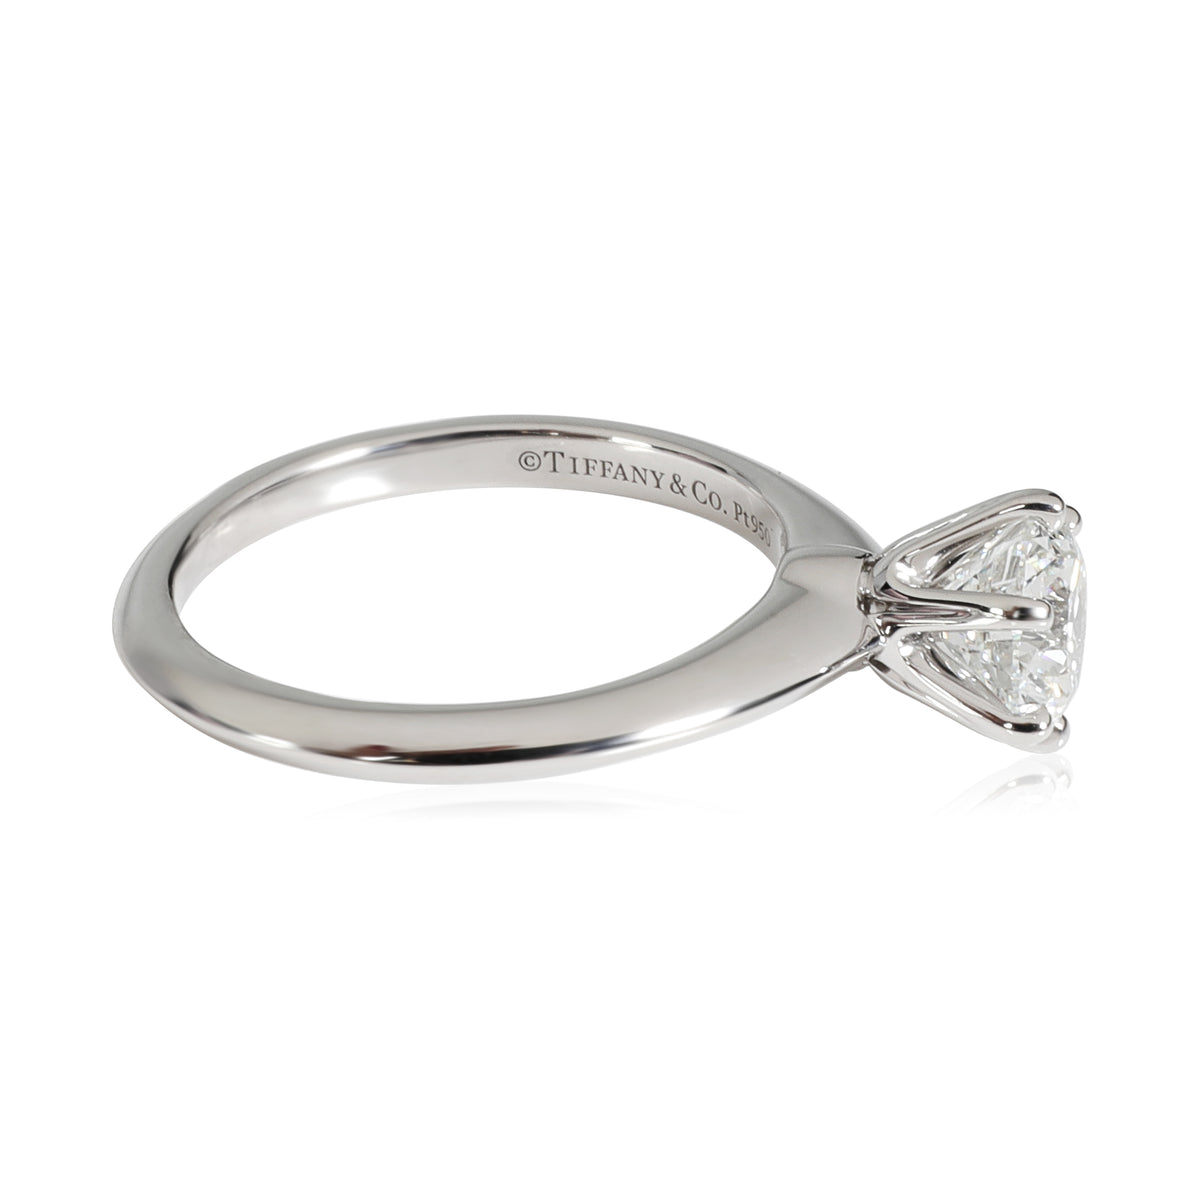 Diamond Engagement Ring in Platinum F VS1 1.06 CTW